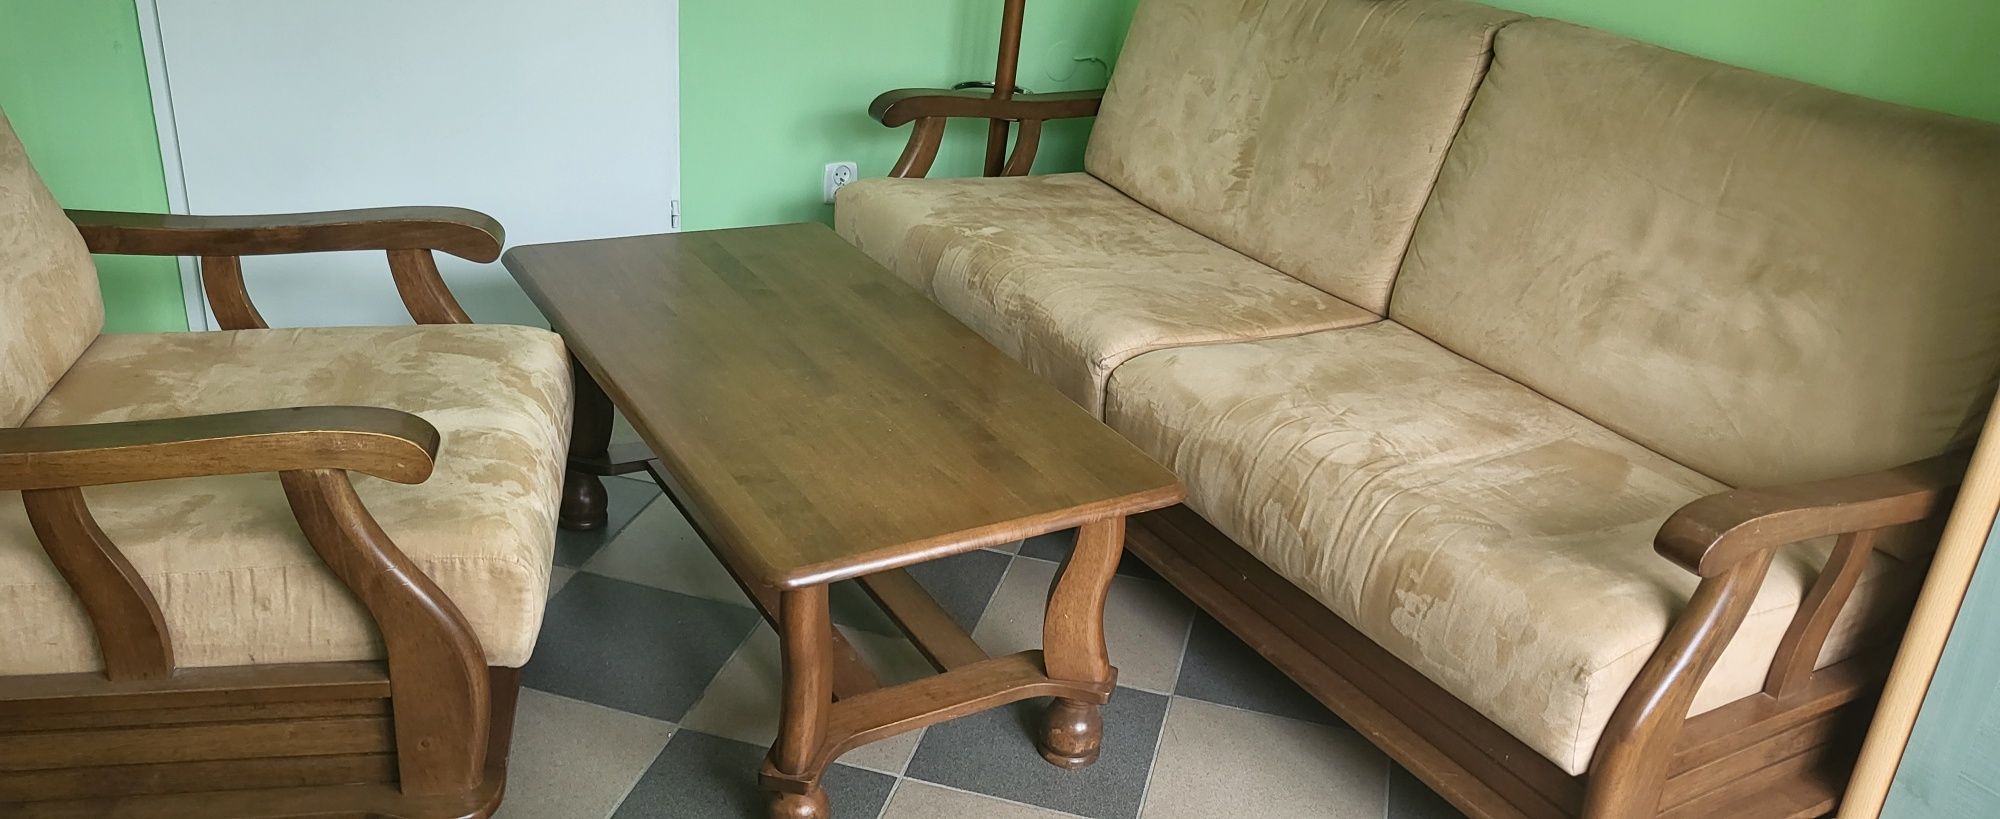 Komplet wypoczynkowy:sofa ,2 fotele i ława. Meble drewniane.